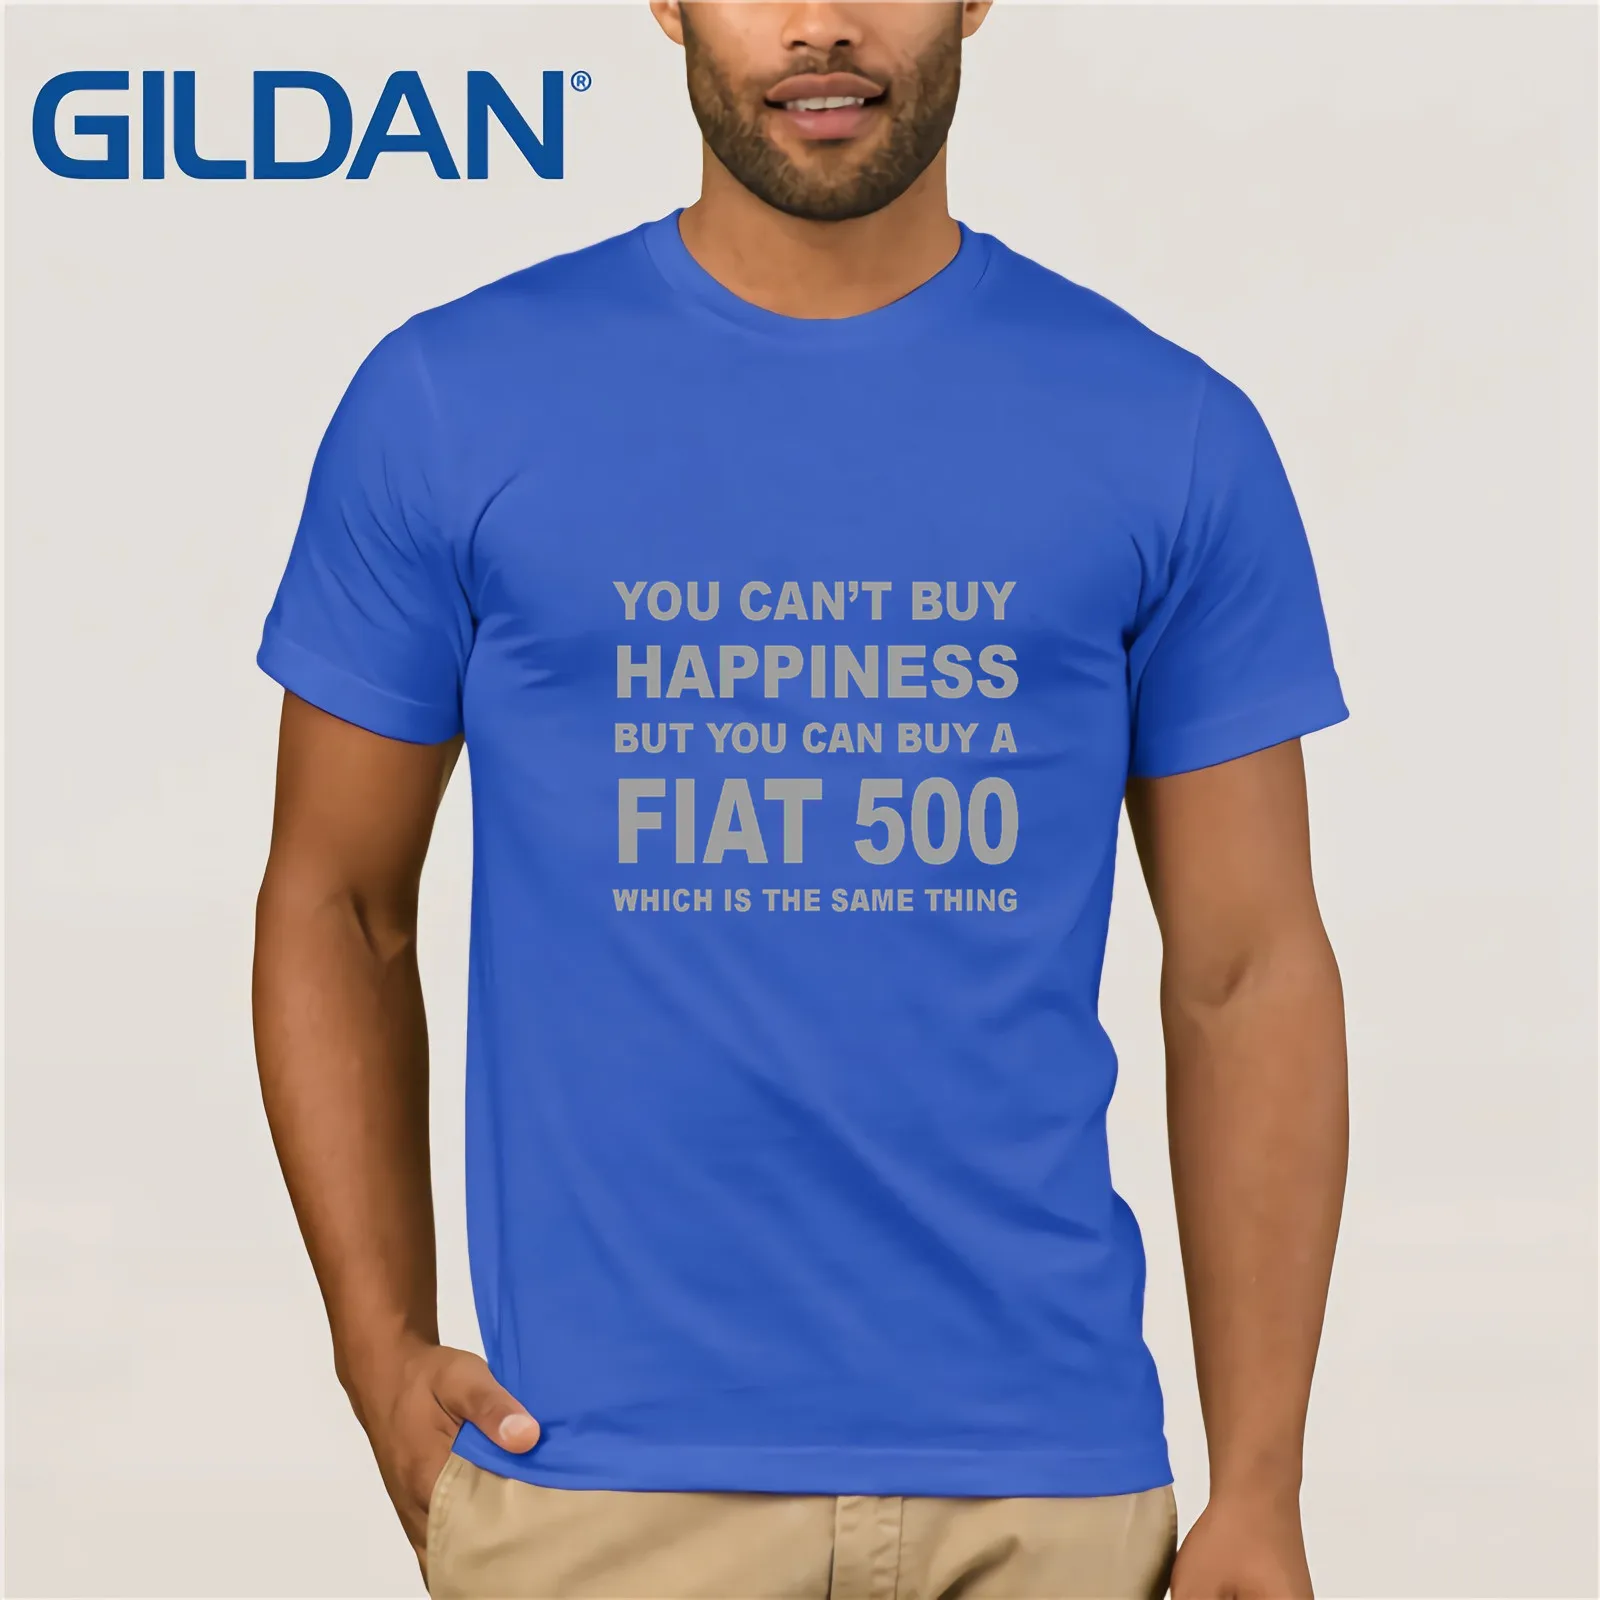 Футболка Fiat 500 футболка с забавным автомобилем размеры S-XXL новые футболки